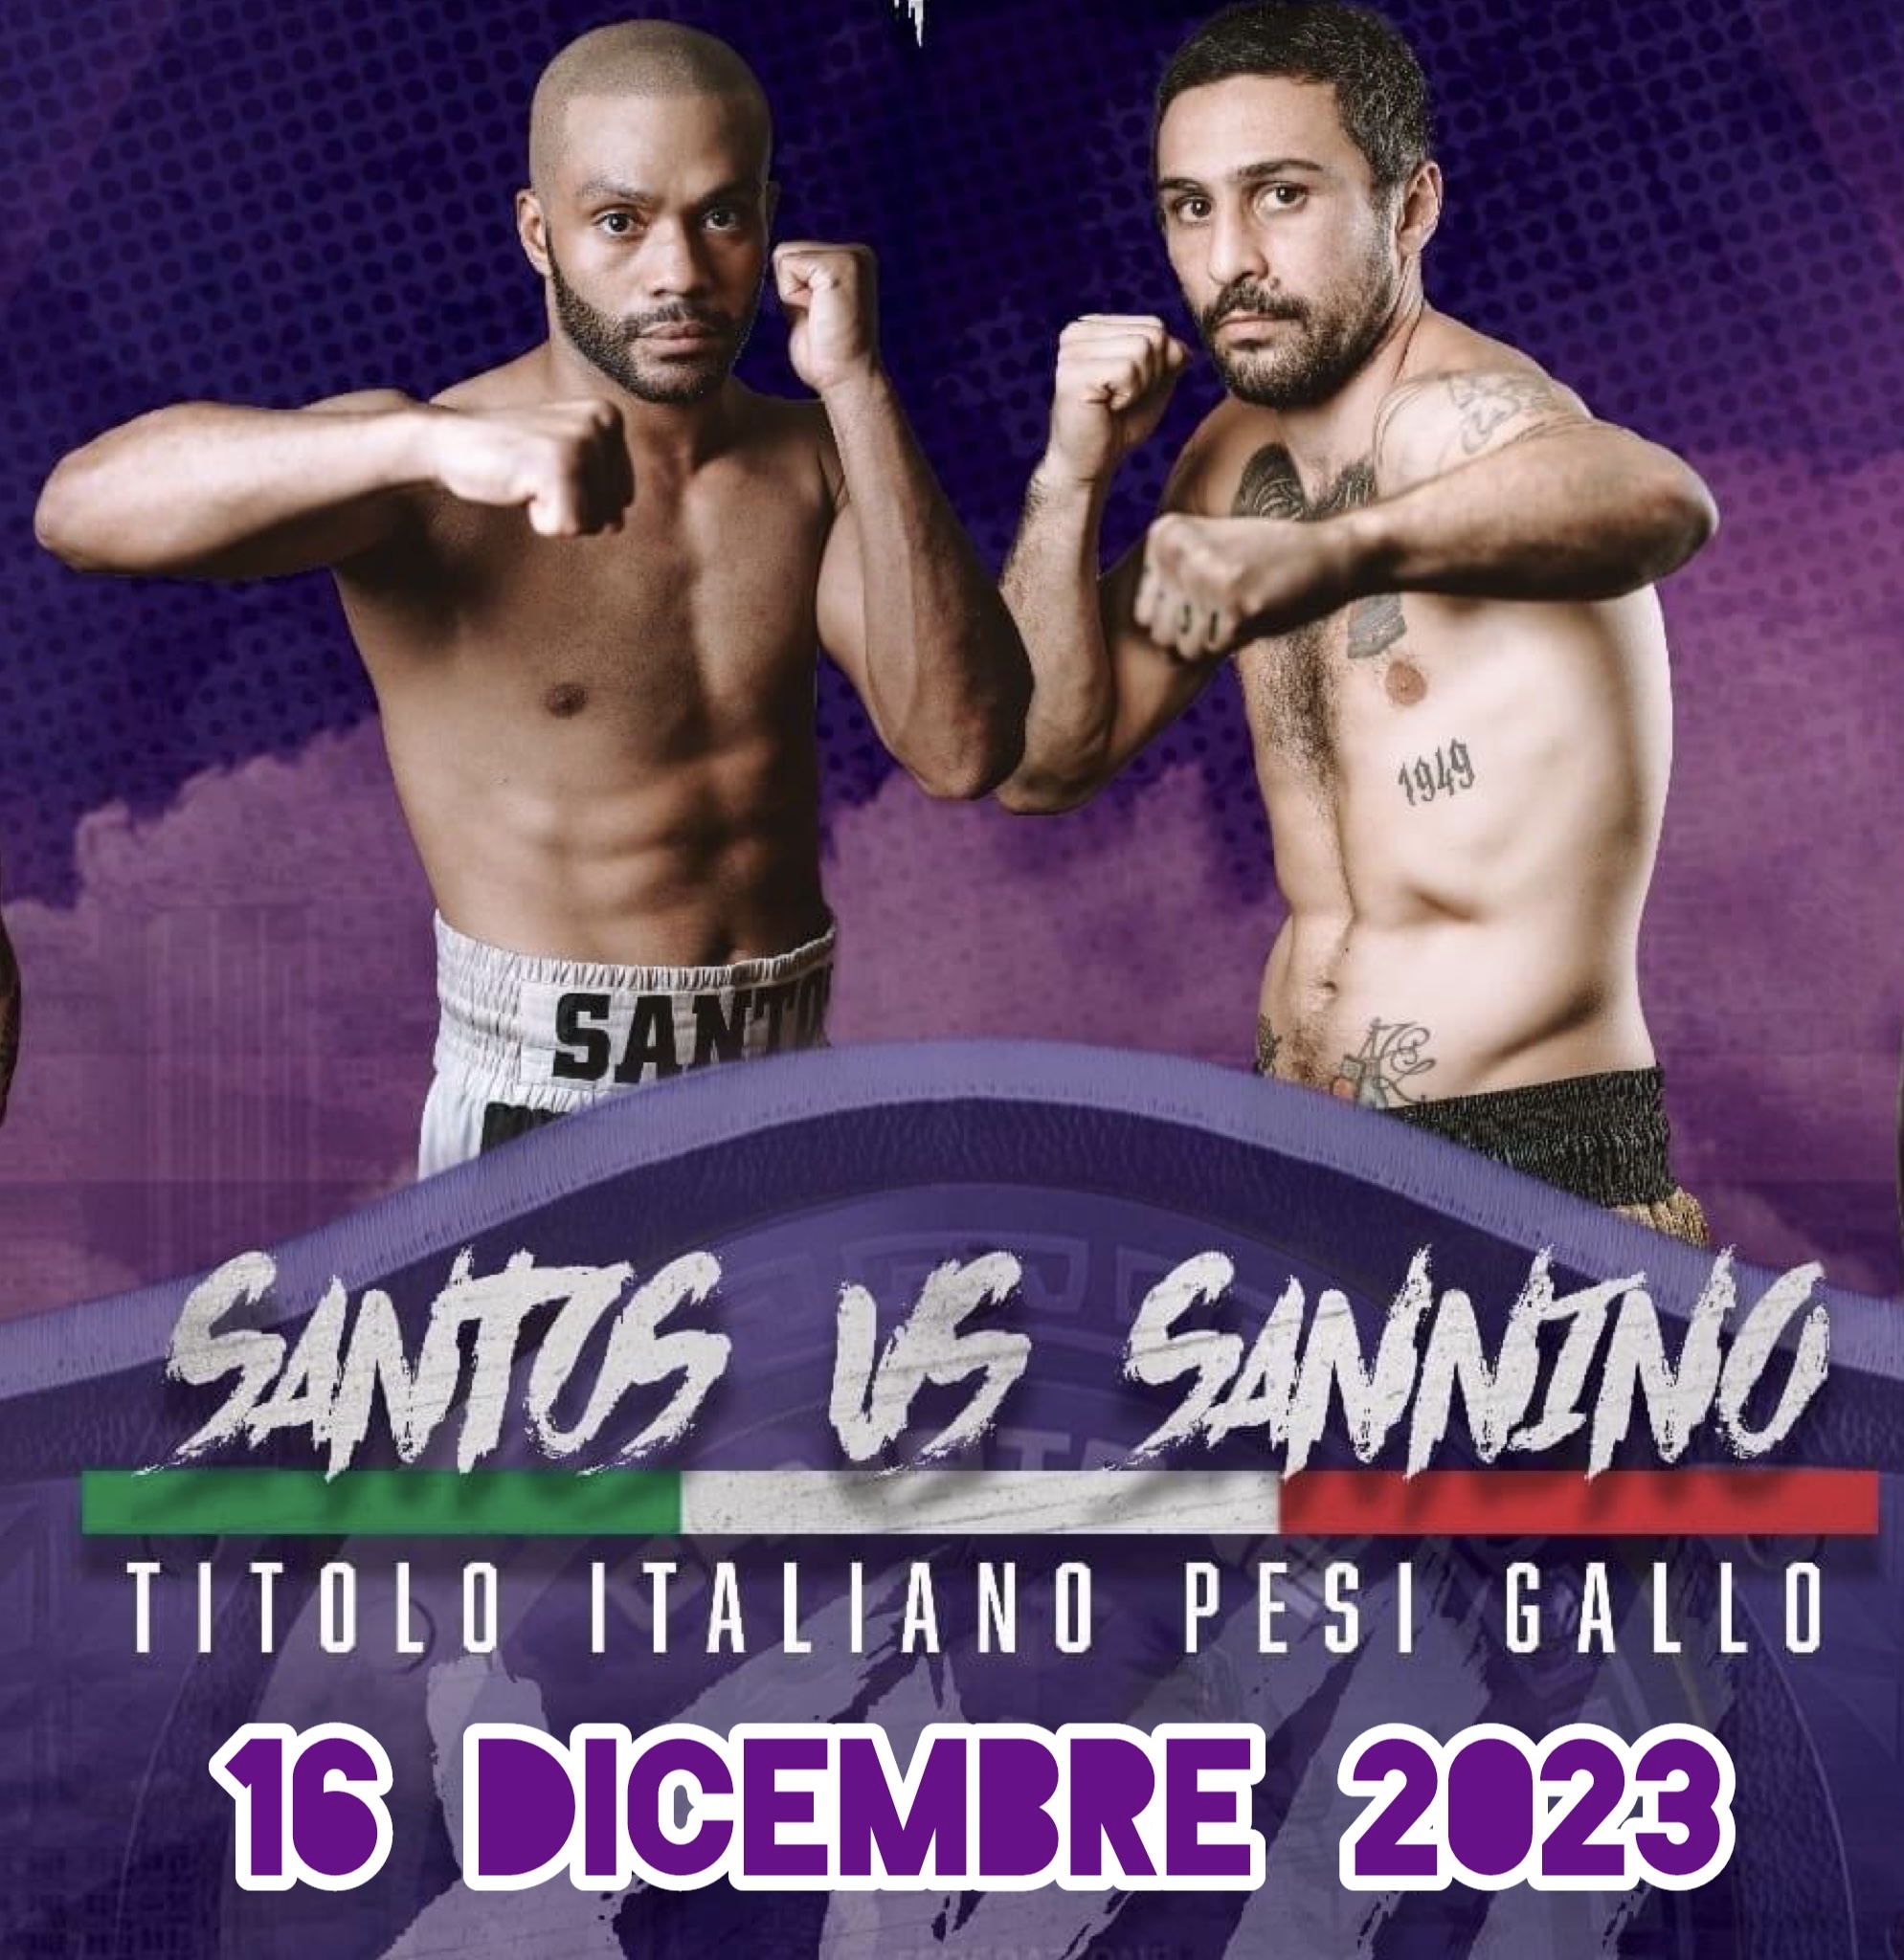 Il prossimo 16 Dicembre a Lastra a Signa (FI) Santos vs Sannino per il Titolo Italiano Gallo 